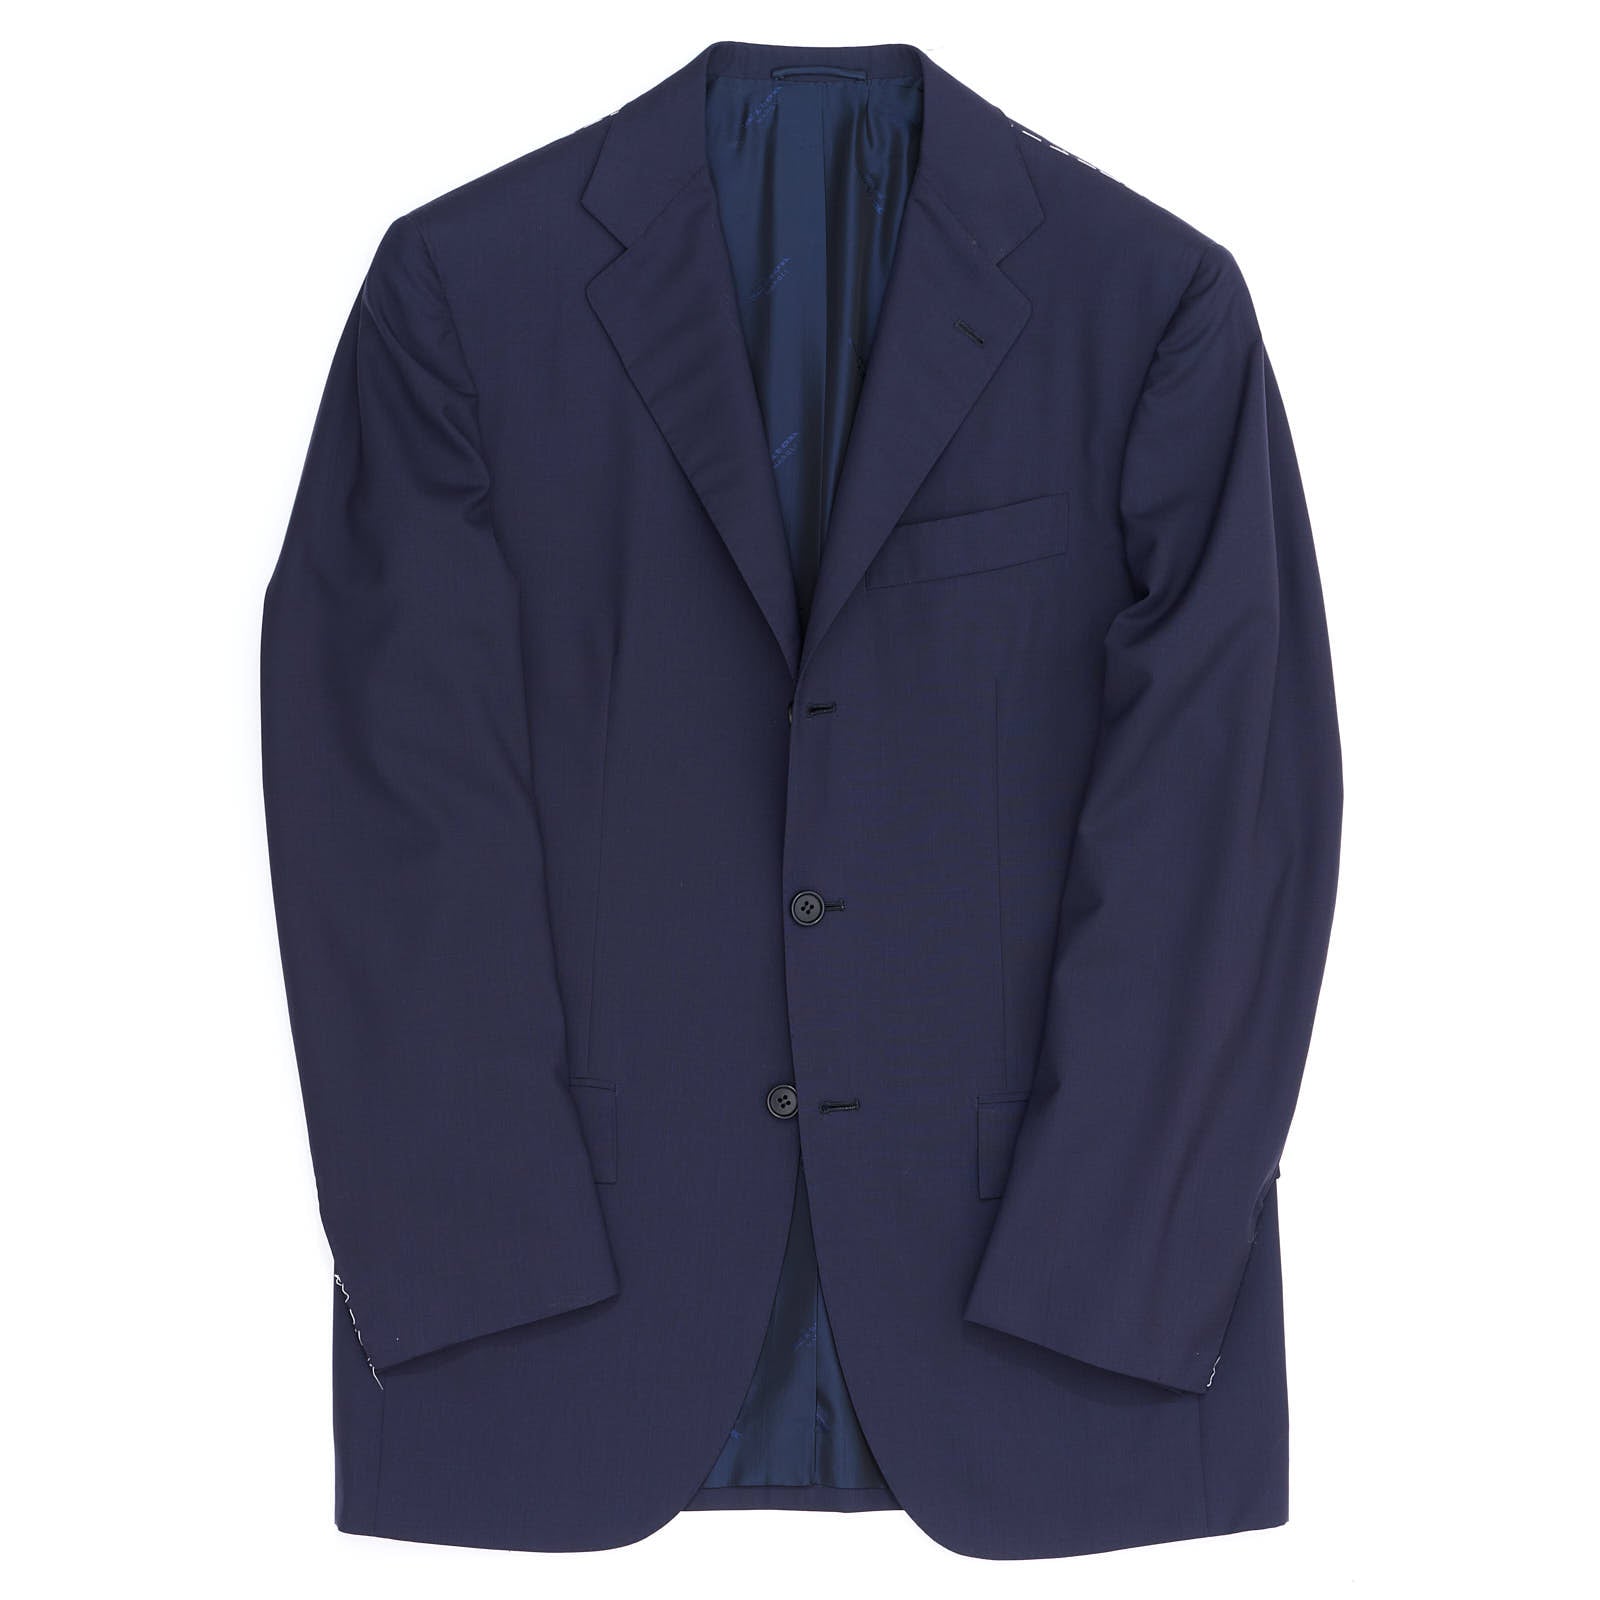 KITON Napoli Navy Blue Wool 14 Micron Super 180's Jacket Blazer EU 46 NEW US 36